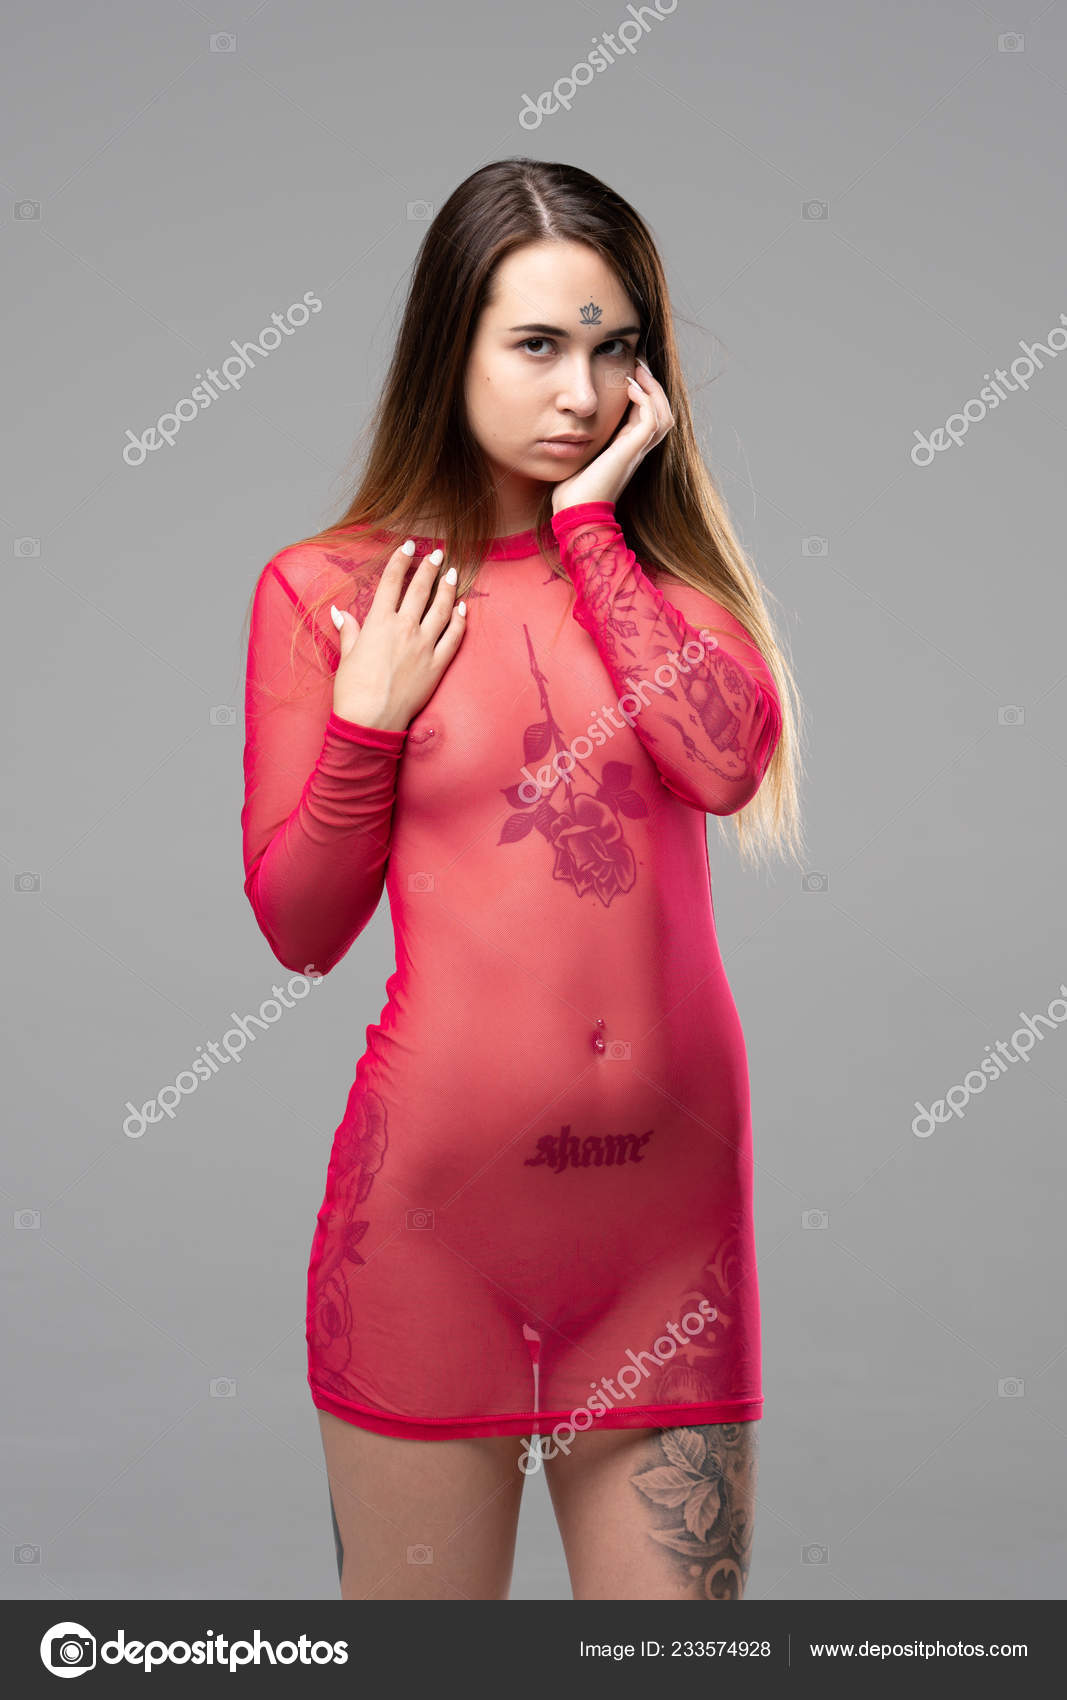 https://st4n.depositphotos.com/10086424/23357/i/1600/depositphotos_233574928-stock-photo-young-beautiful-girl-posing-nude.jpg